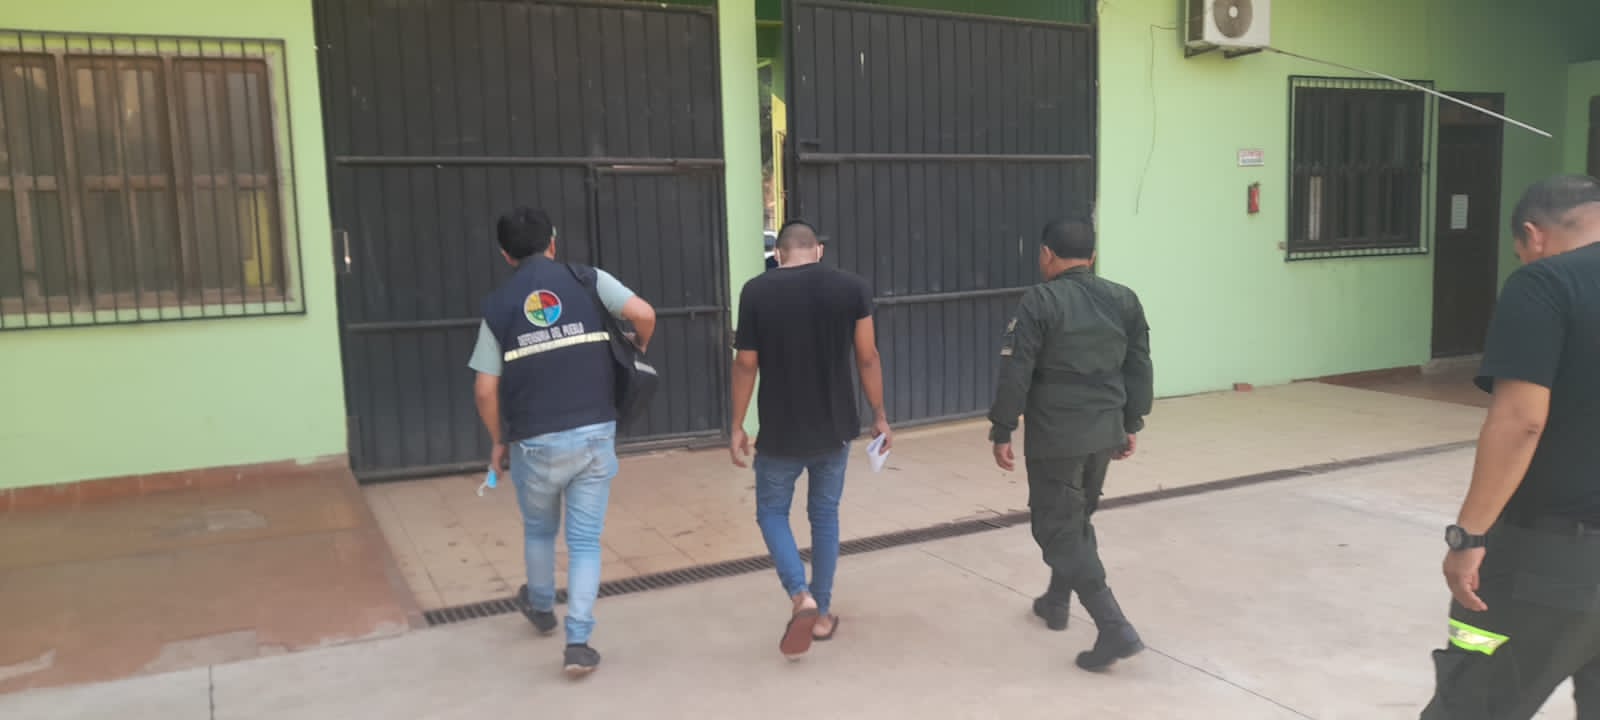 Persona privada de libertad recibe atención médica tras gestión de la Defensoría del Pueblo en Guayaramerín